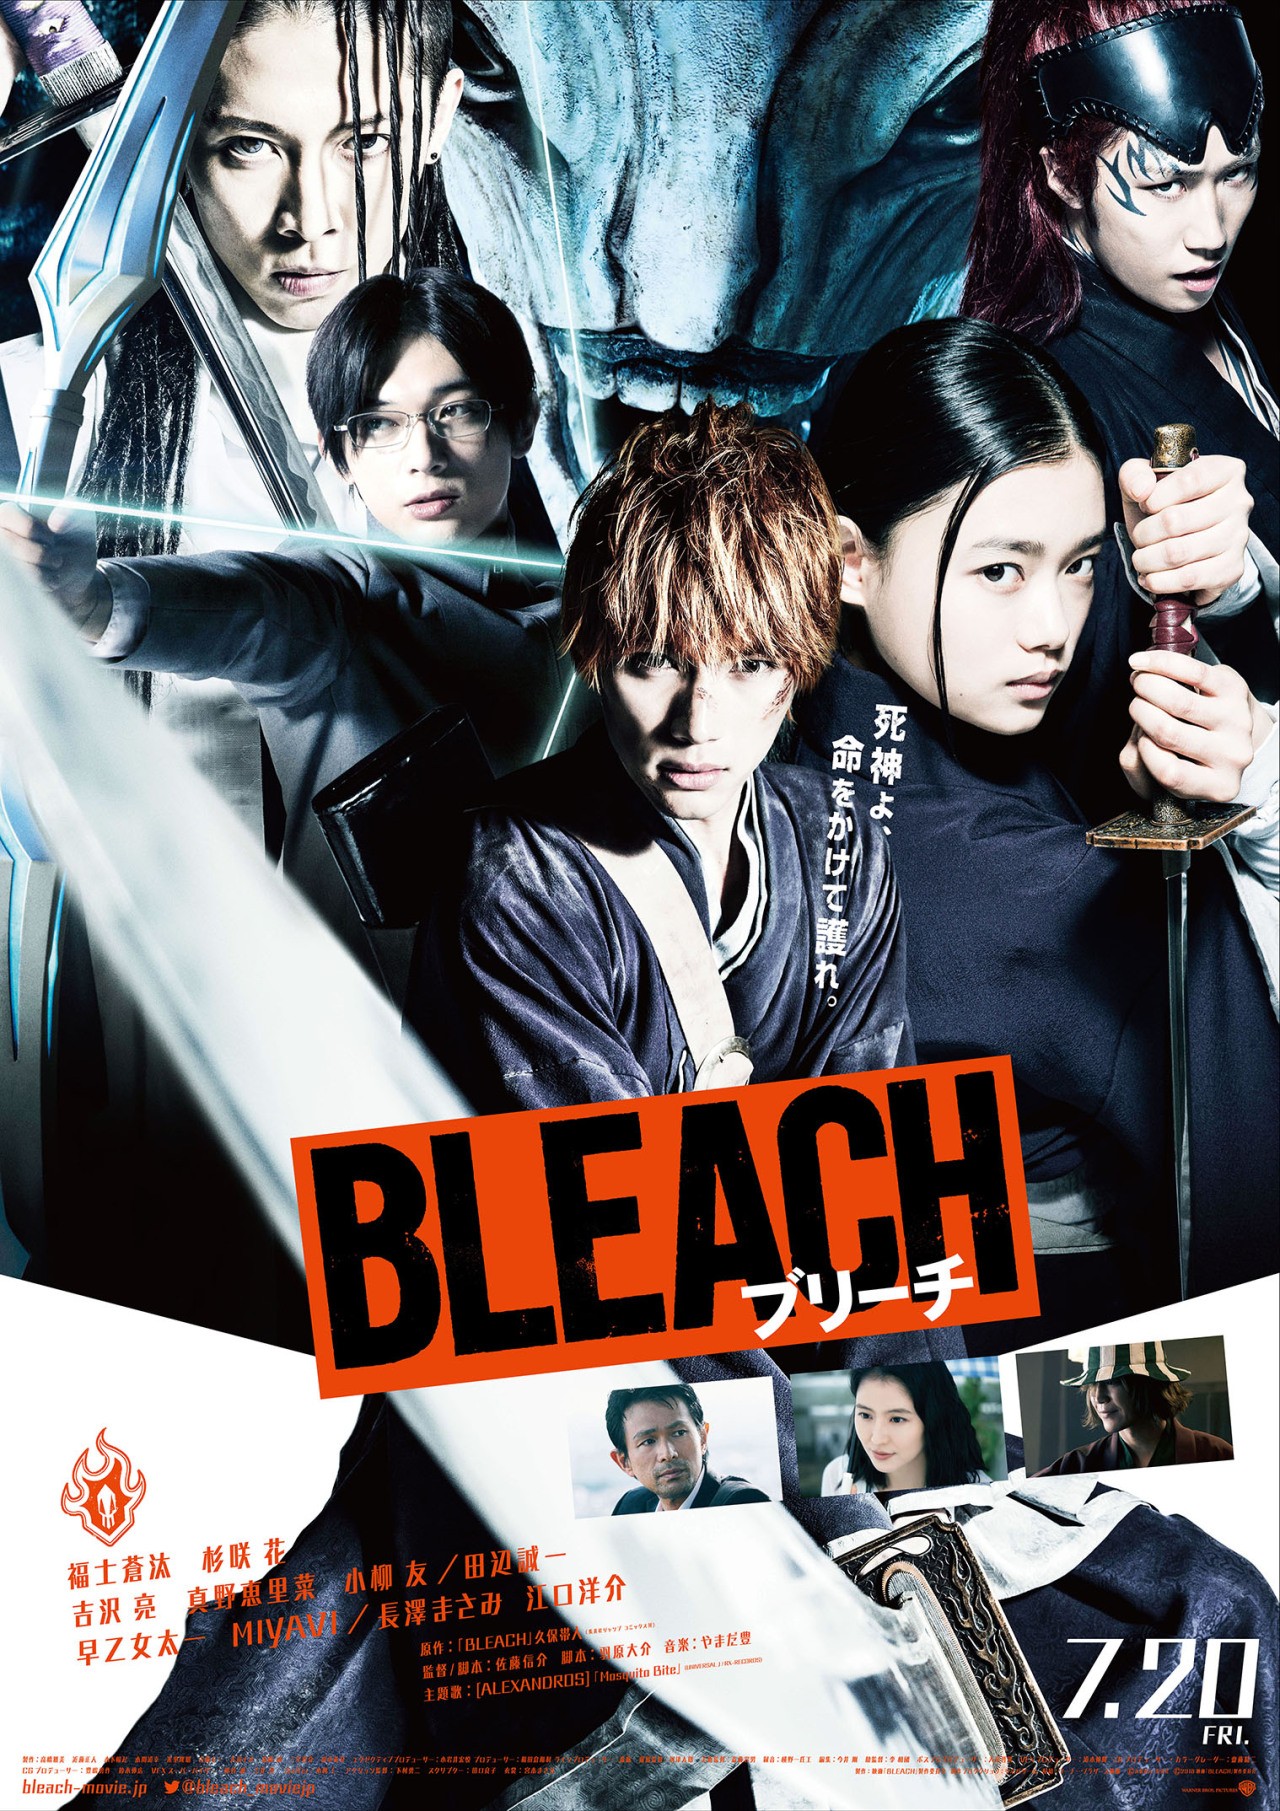 Bleach Online Review